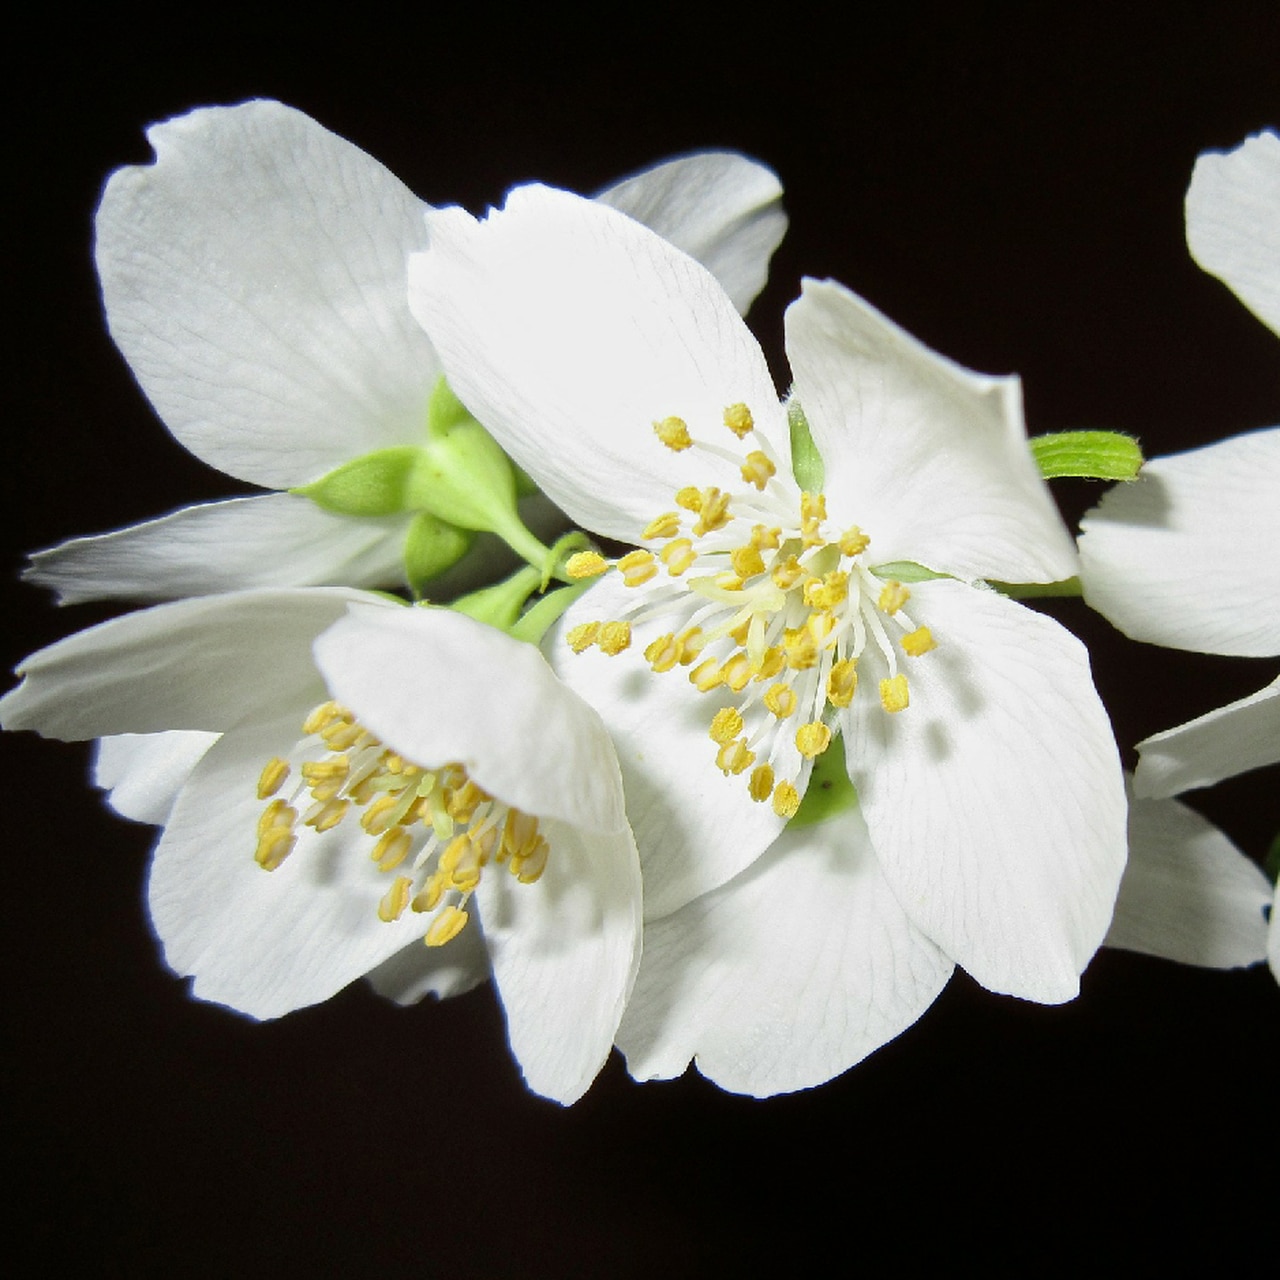 Desert Sage Herbs - Jasmine Flower